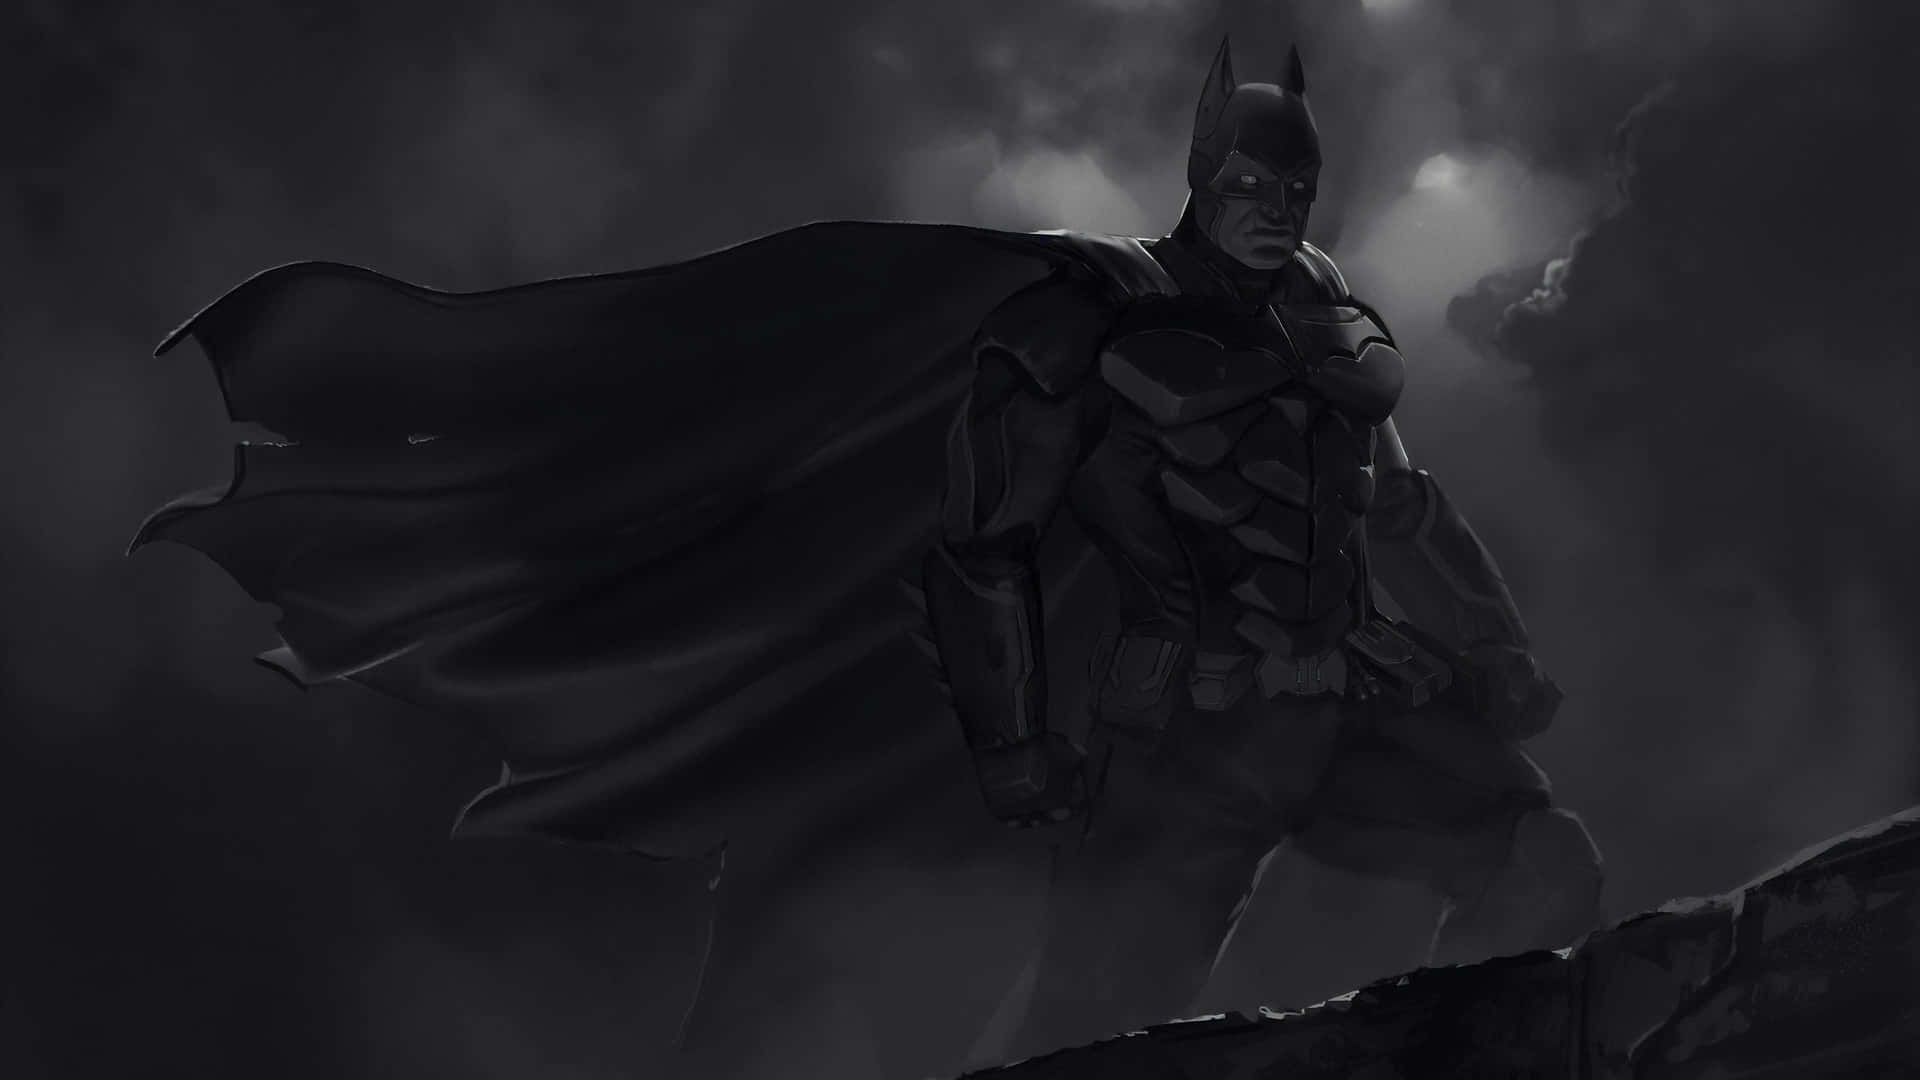 Dark Knight Vigilance.jpg Wallpaper